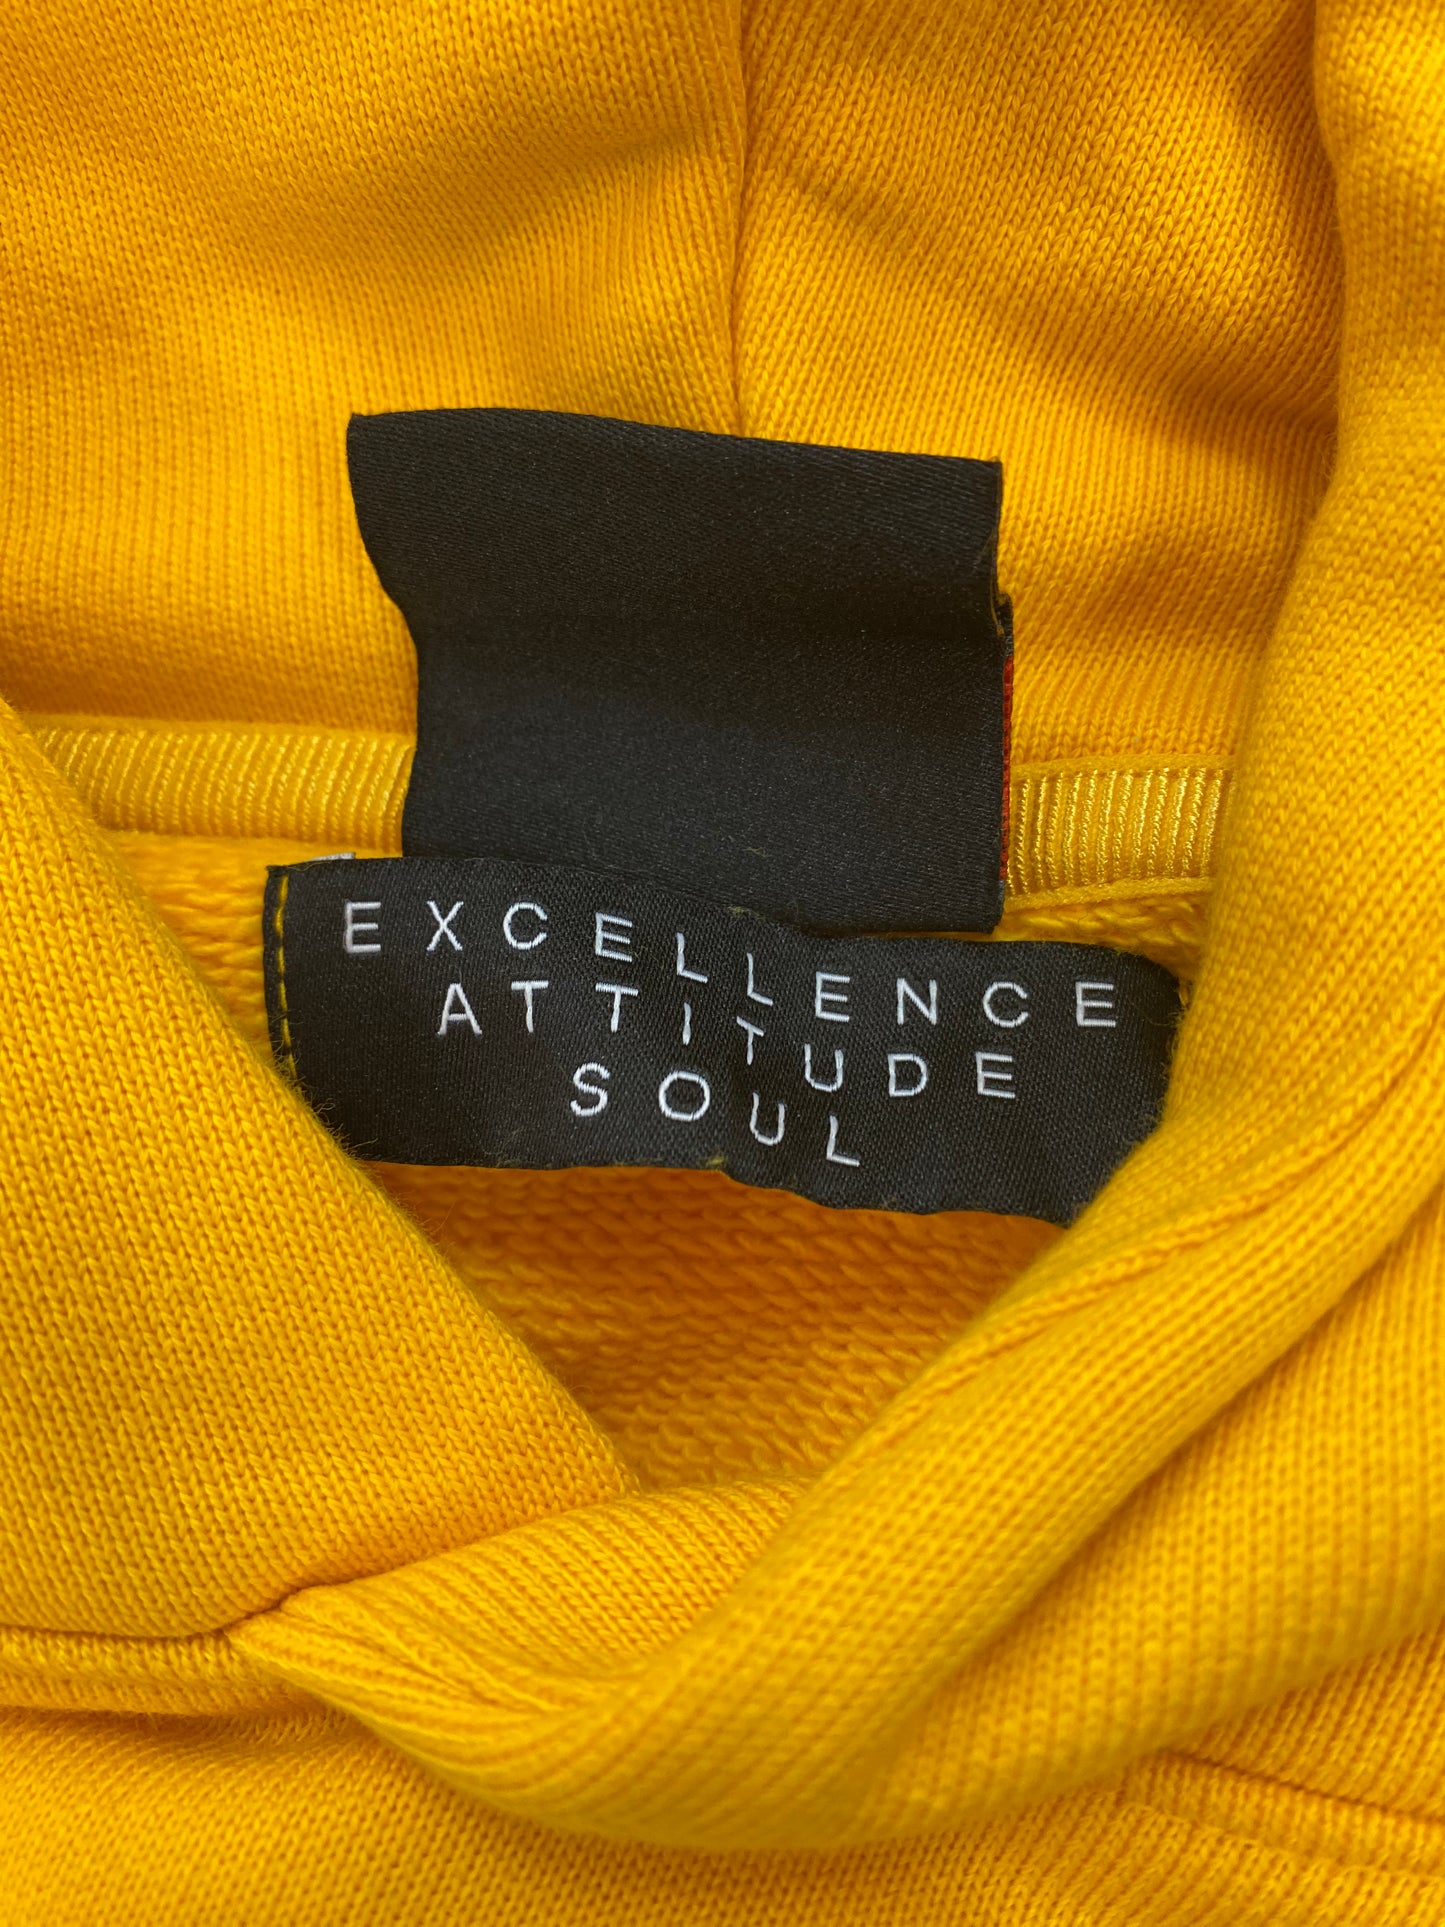 Jordan Excellence Attitude Soul Unreleased colorway sample hoodie